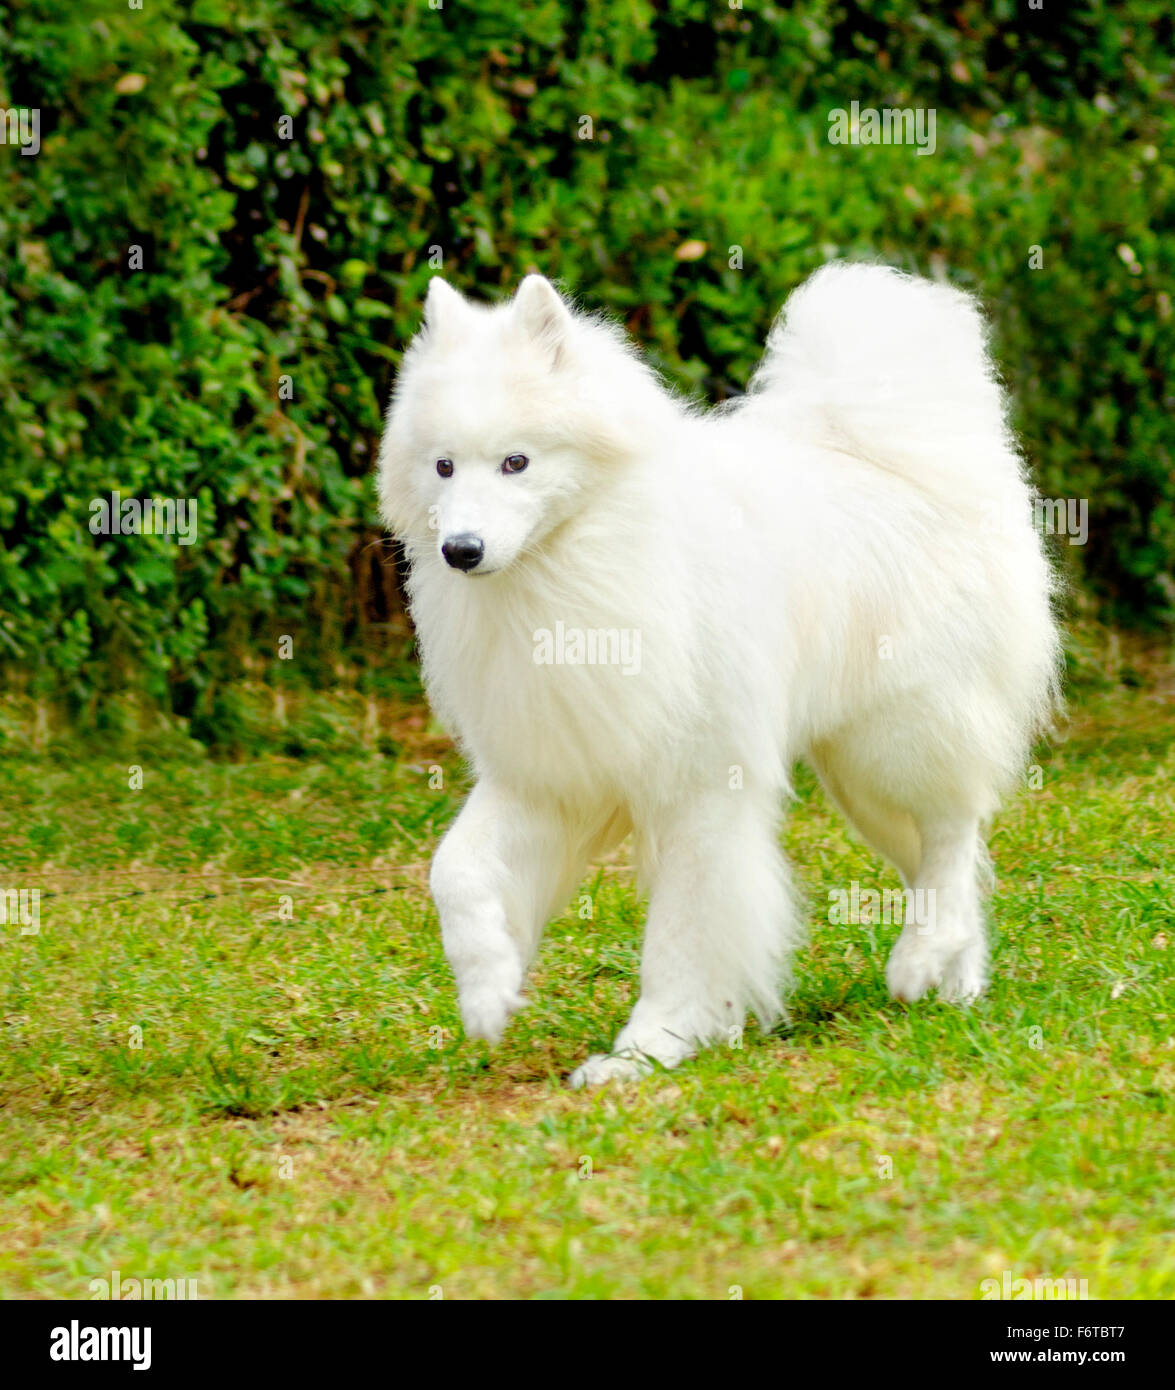 Eine junge schöne weiße flauschige Samoyed Hundewiesen auf dem Rasen. Die  Sammy Hund sieht aus wie ein weißer Wolf, aber es ist sehr sanft, sw  Stockfotografie - Alamy